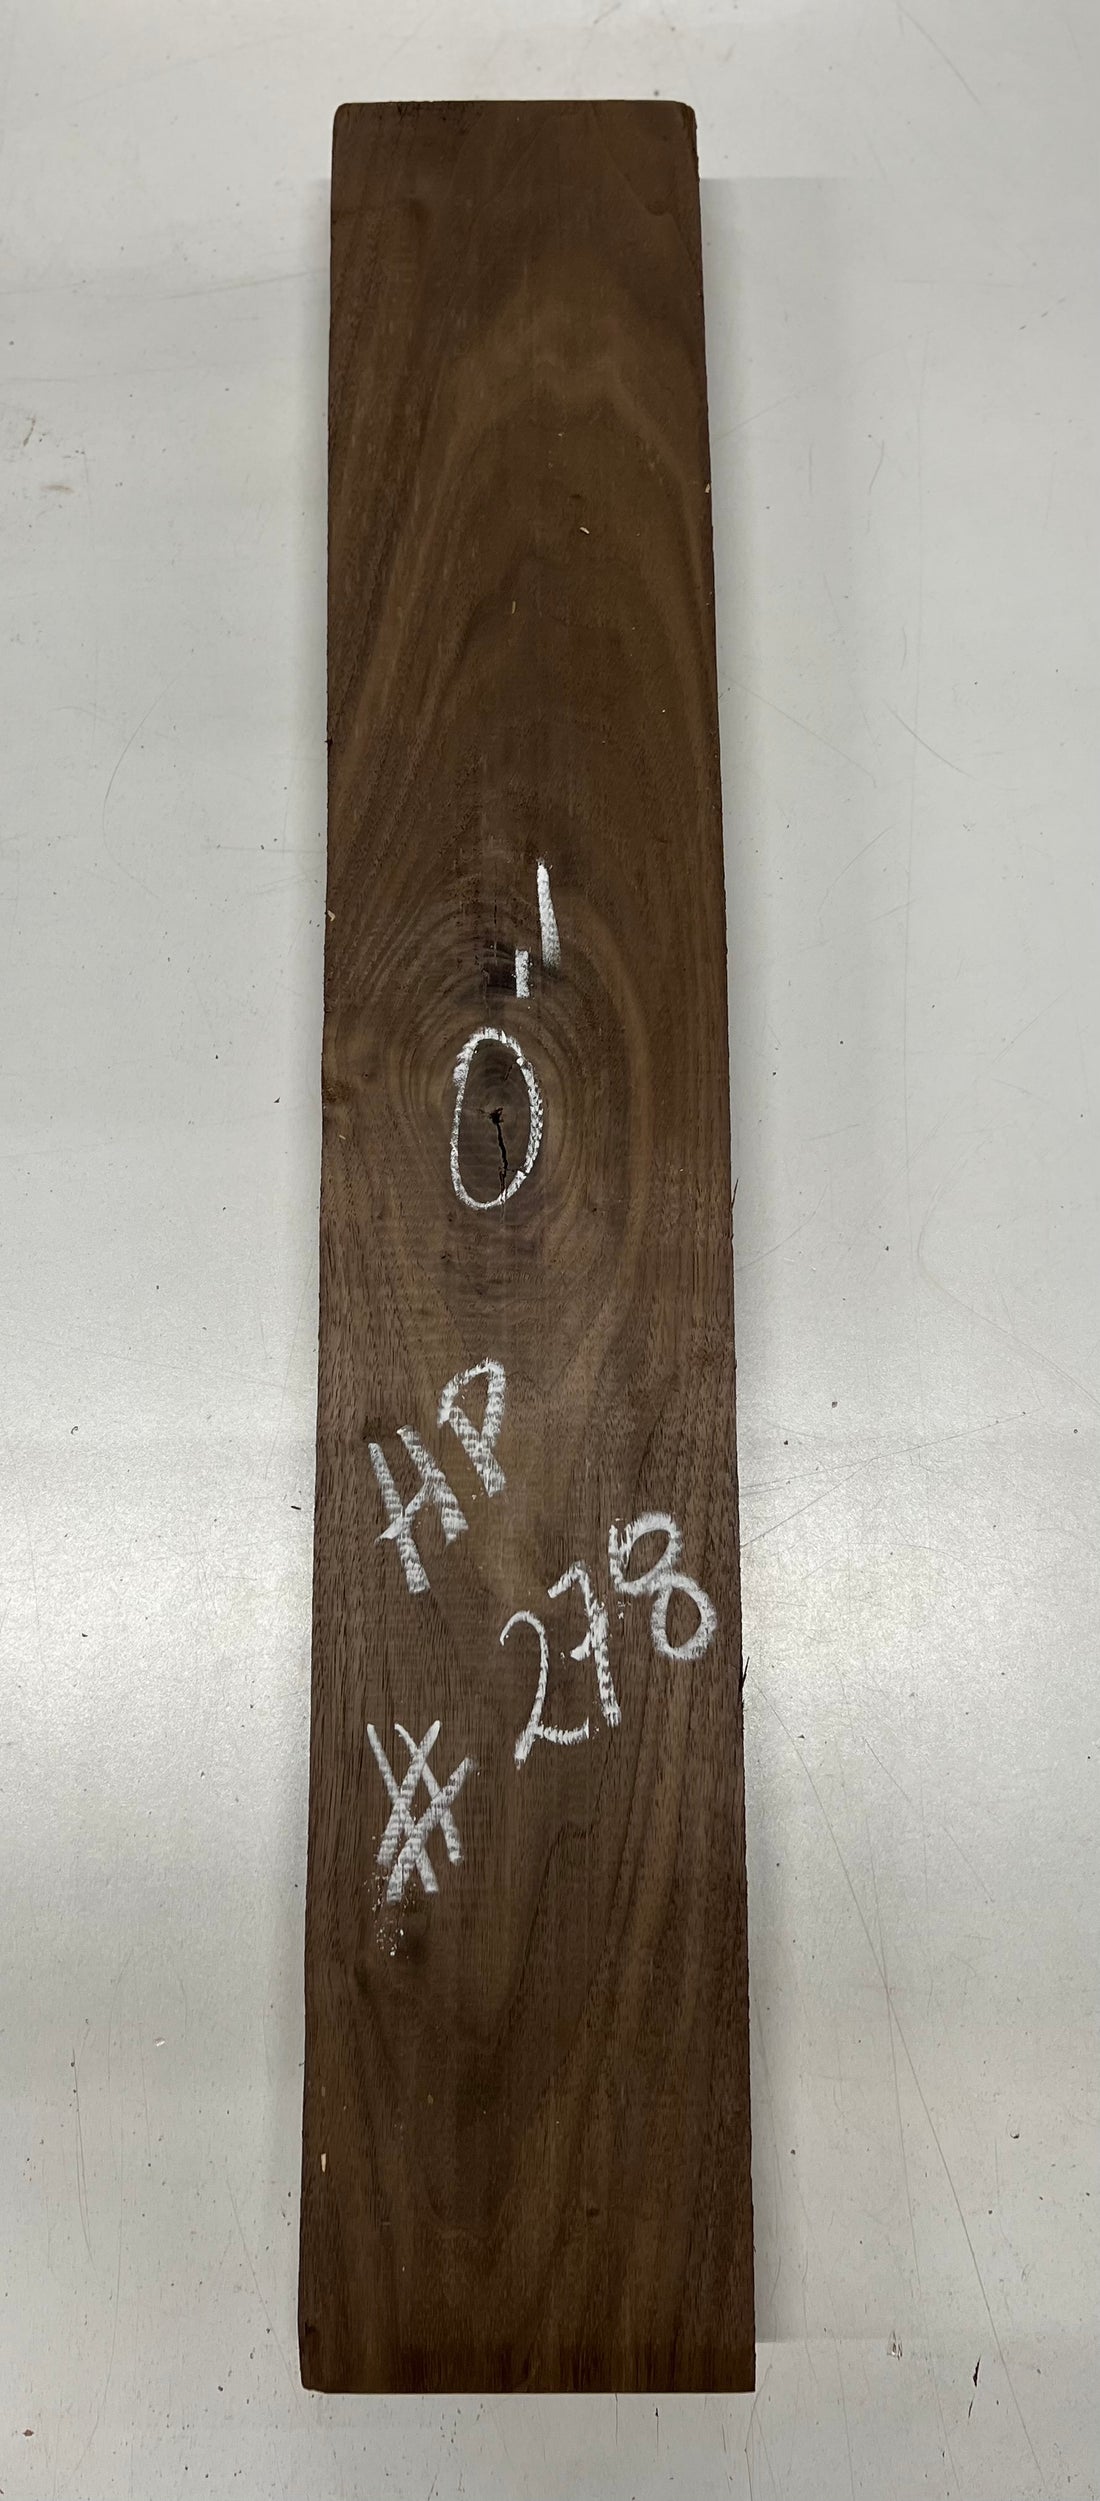 Black Walnut Lumber Board Wood Blank 29&quot;x 5&quot;x 1-7/8&quot; 